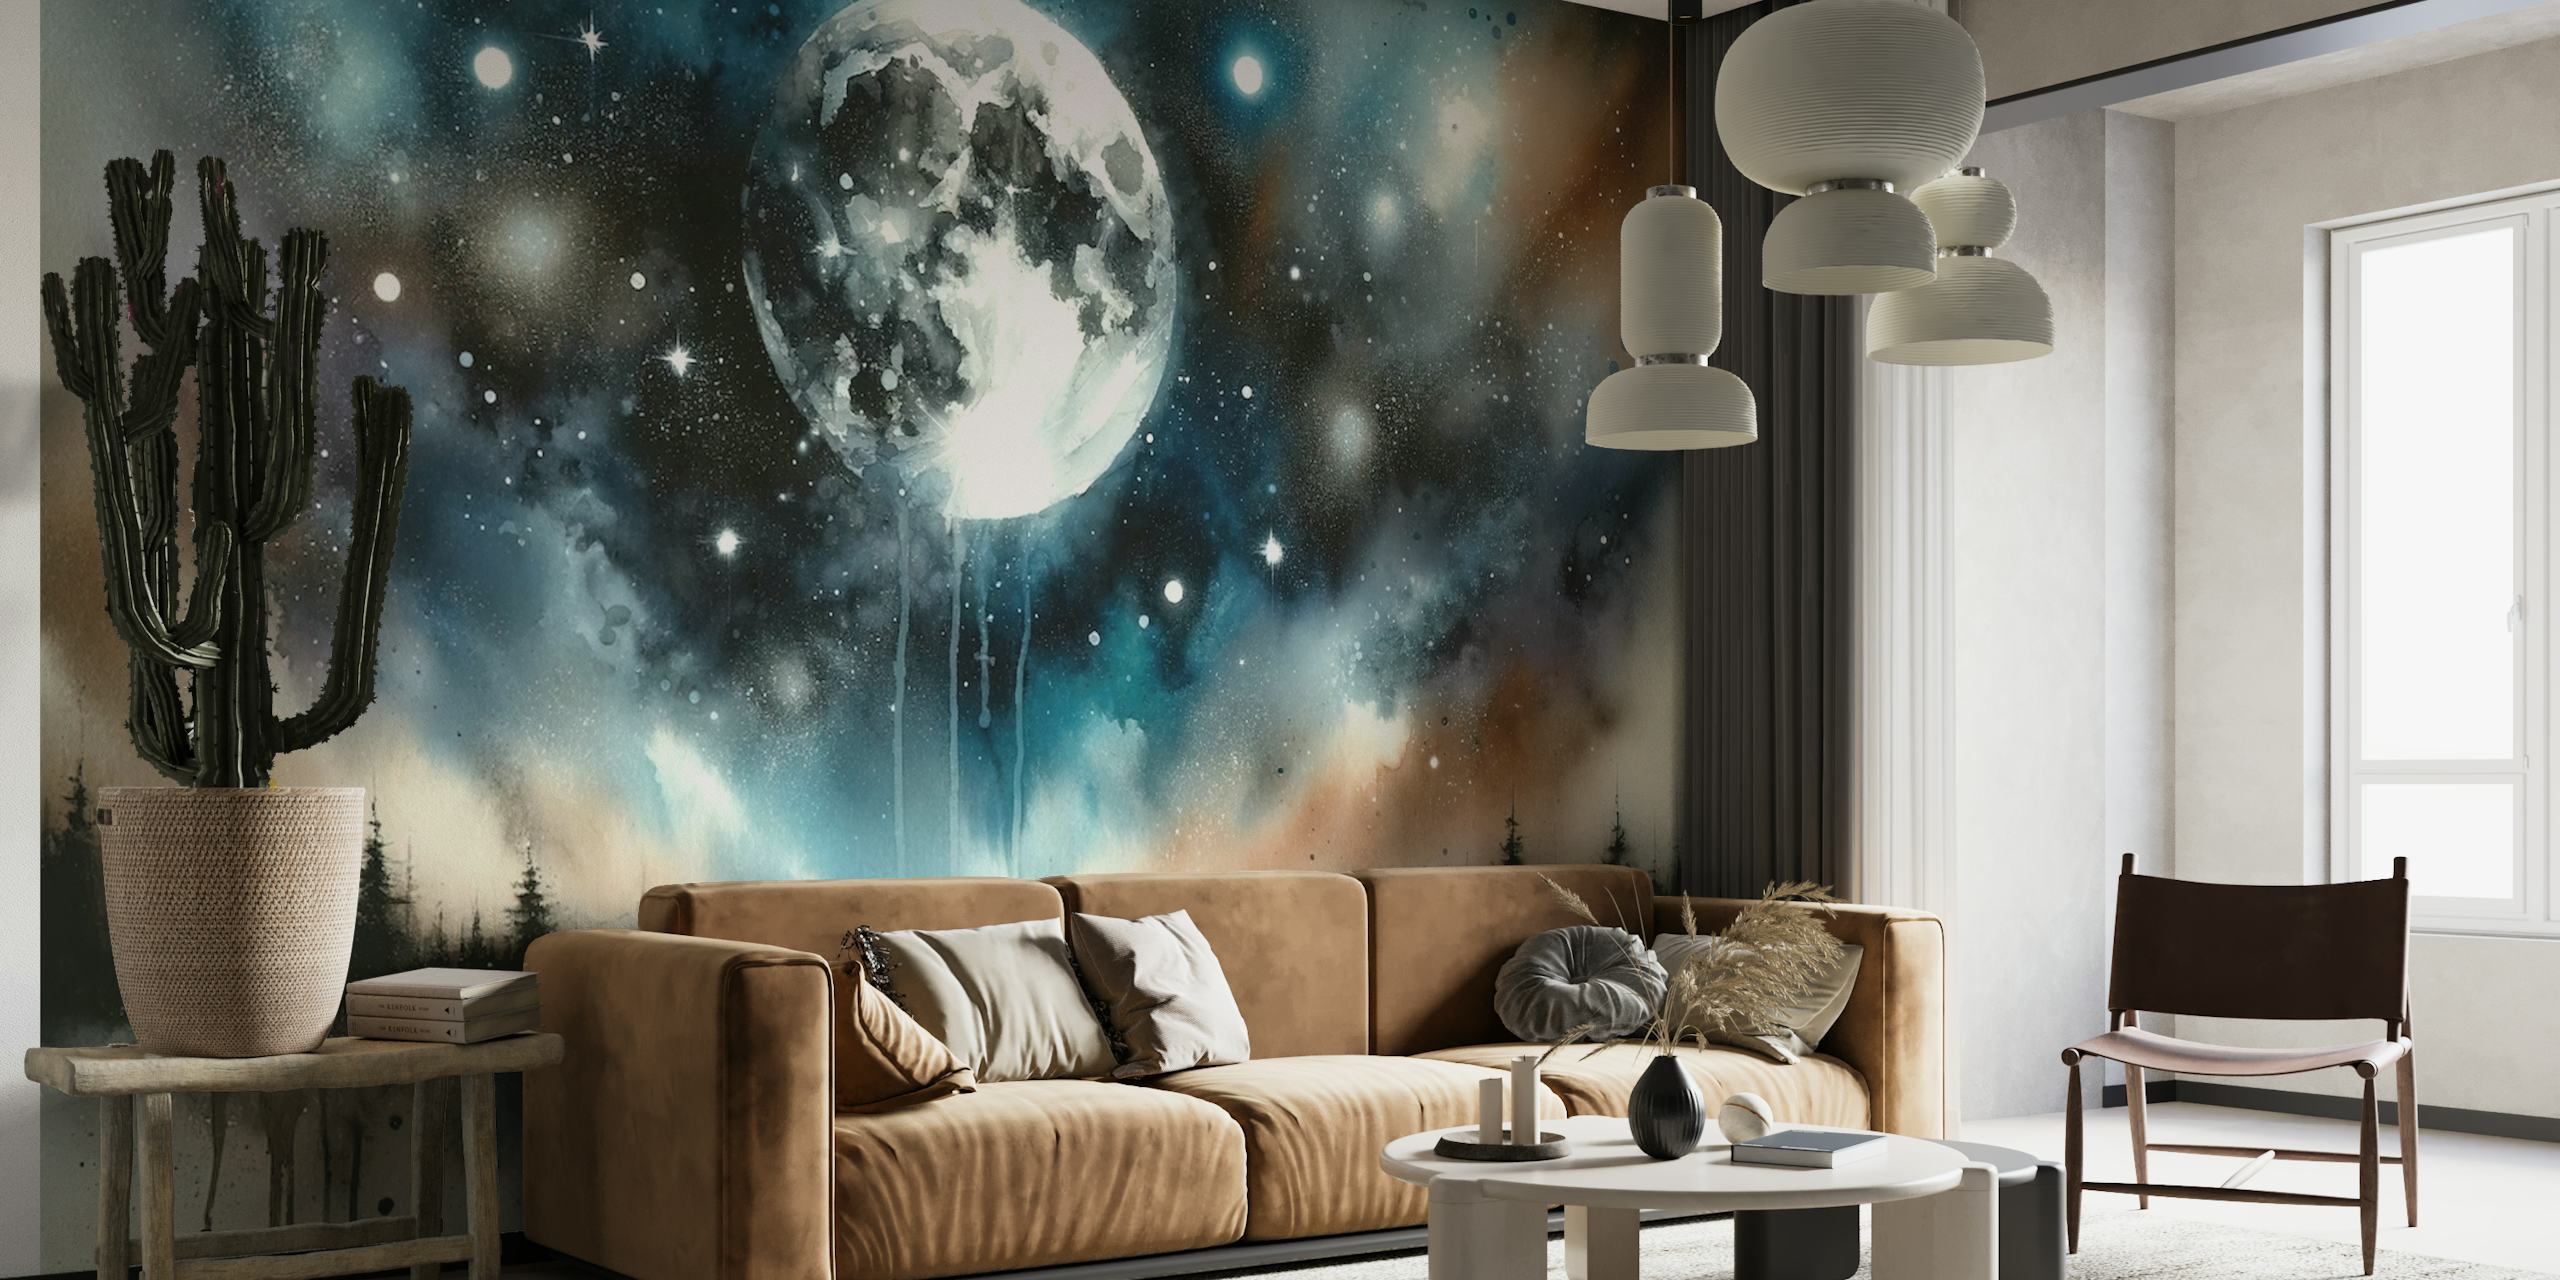 Moonlit Mystique wallpaper